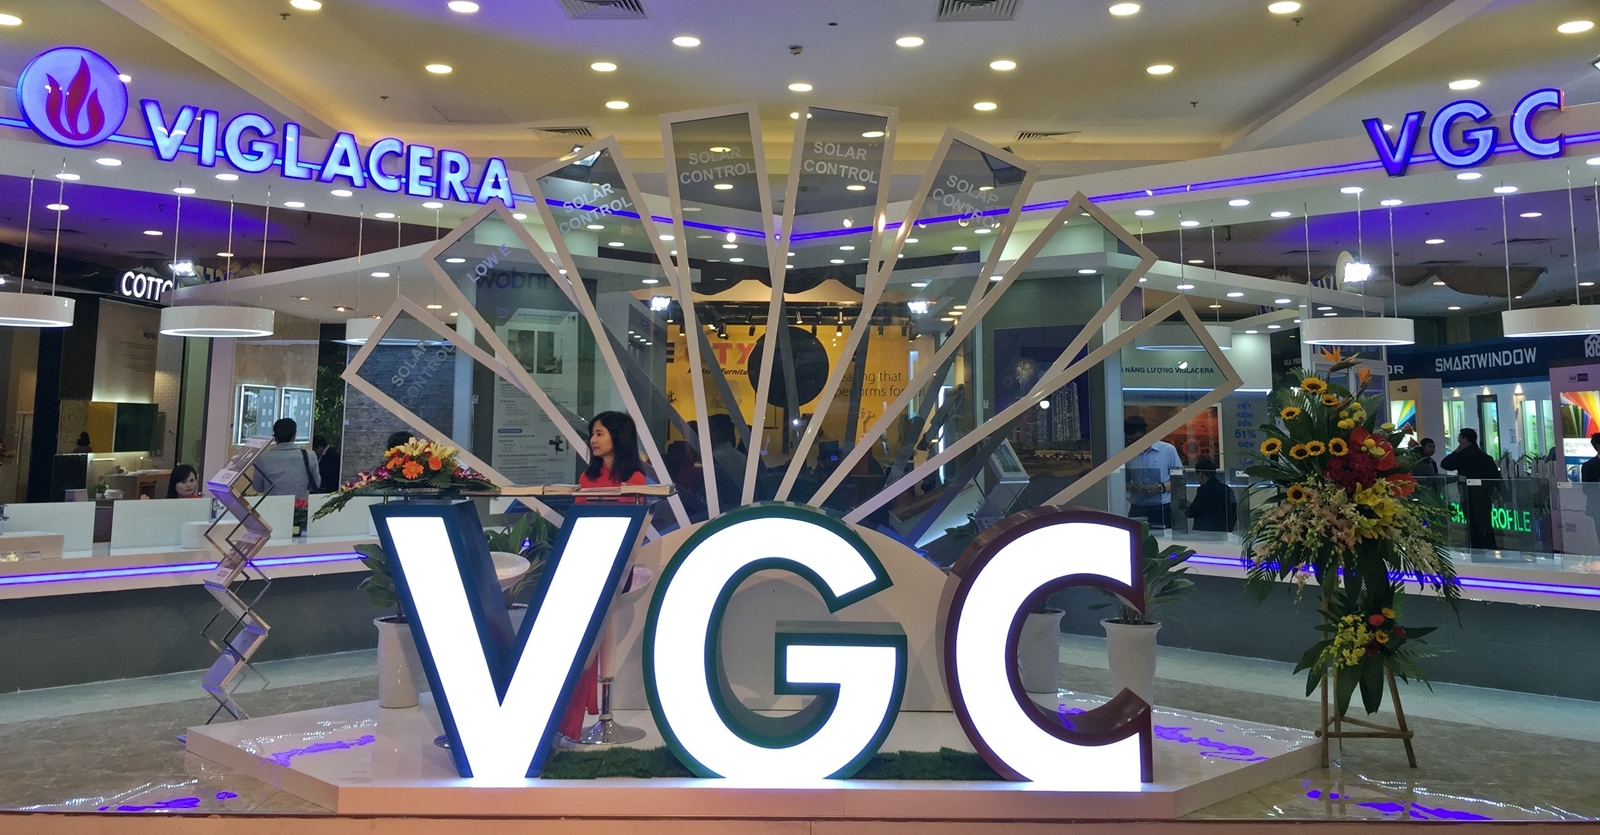 Viglacera: Tạo nền tảng vững chắc cho bệ phóng tương lai